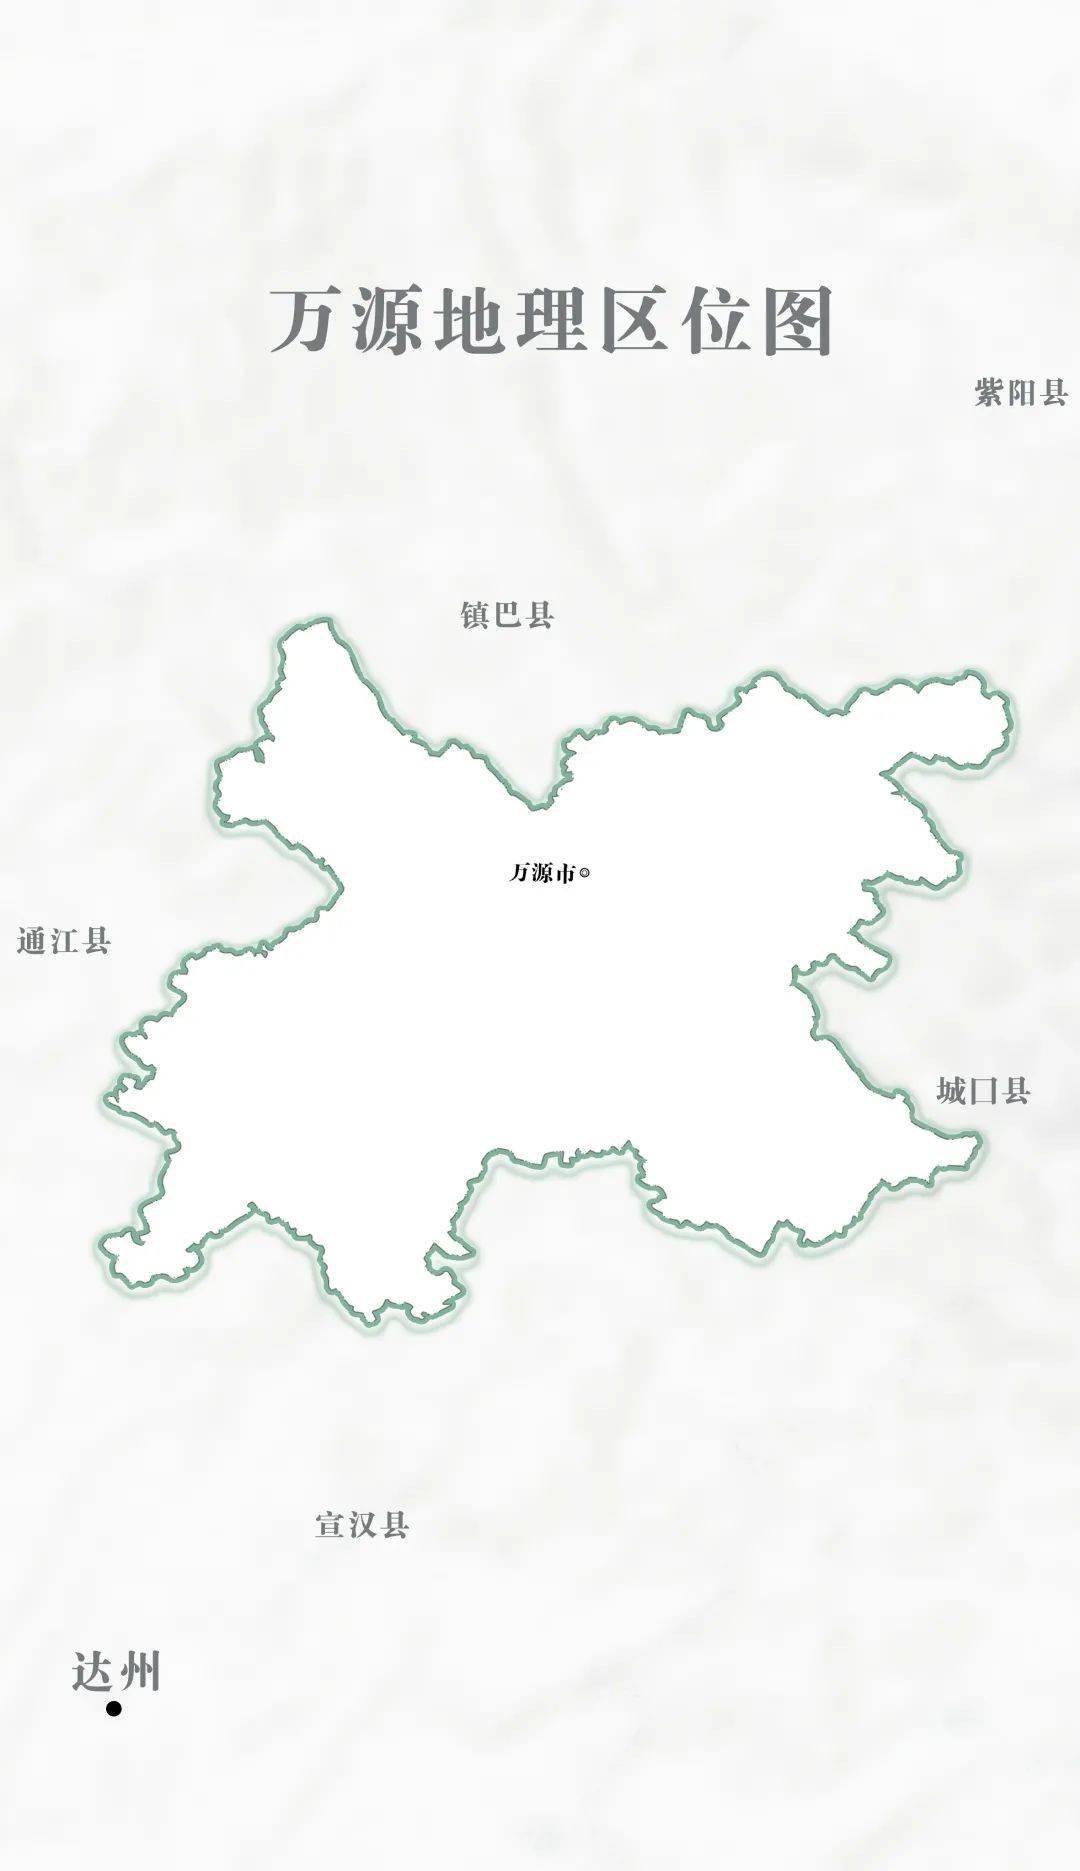 紫阳县乡镇地图图片